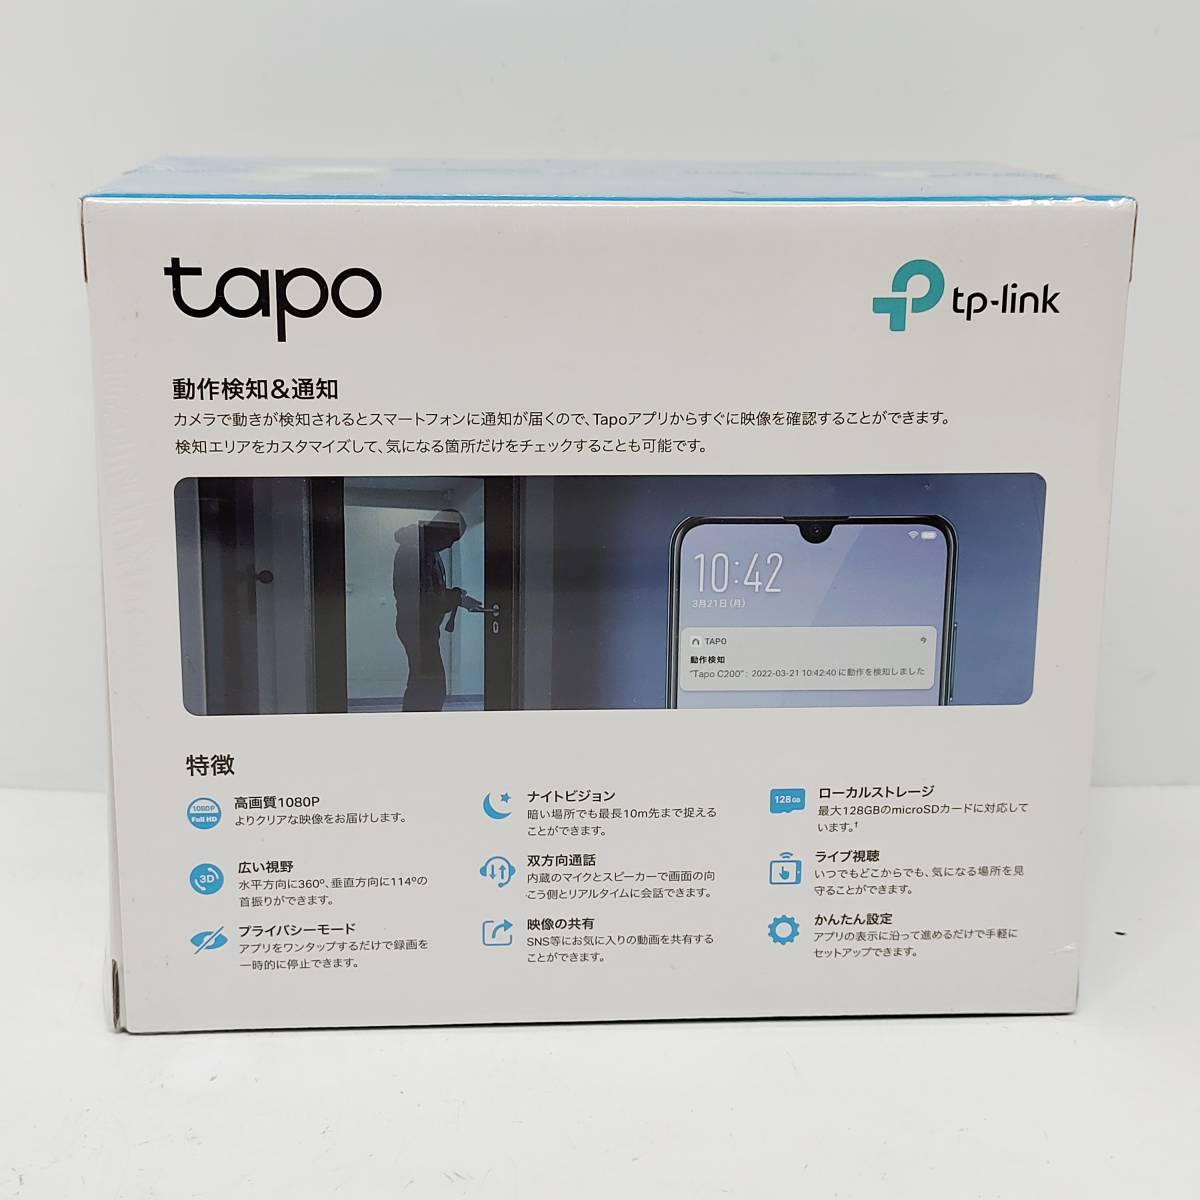 * не использовался tp-link Tapo C200 дырокол ruto сеть Wi-Fi камера нераспечатанный Smart система безопасности предотвращение преступления работа обнаружение прибор ночного видения высокое разрешение S2408